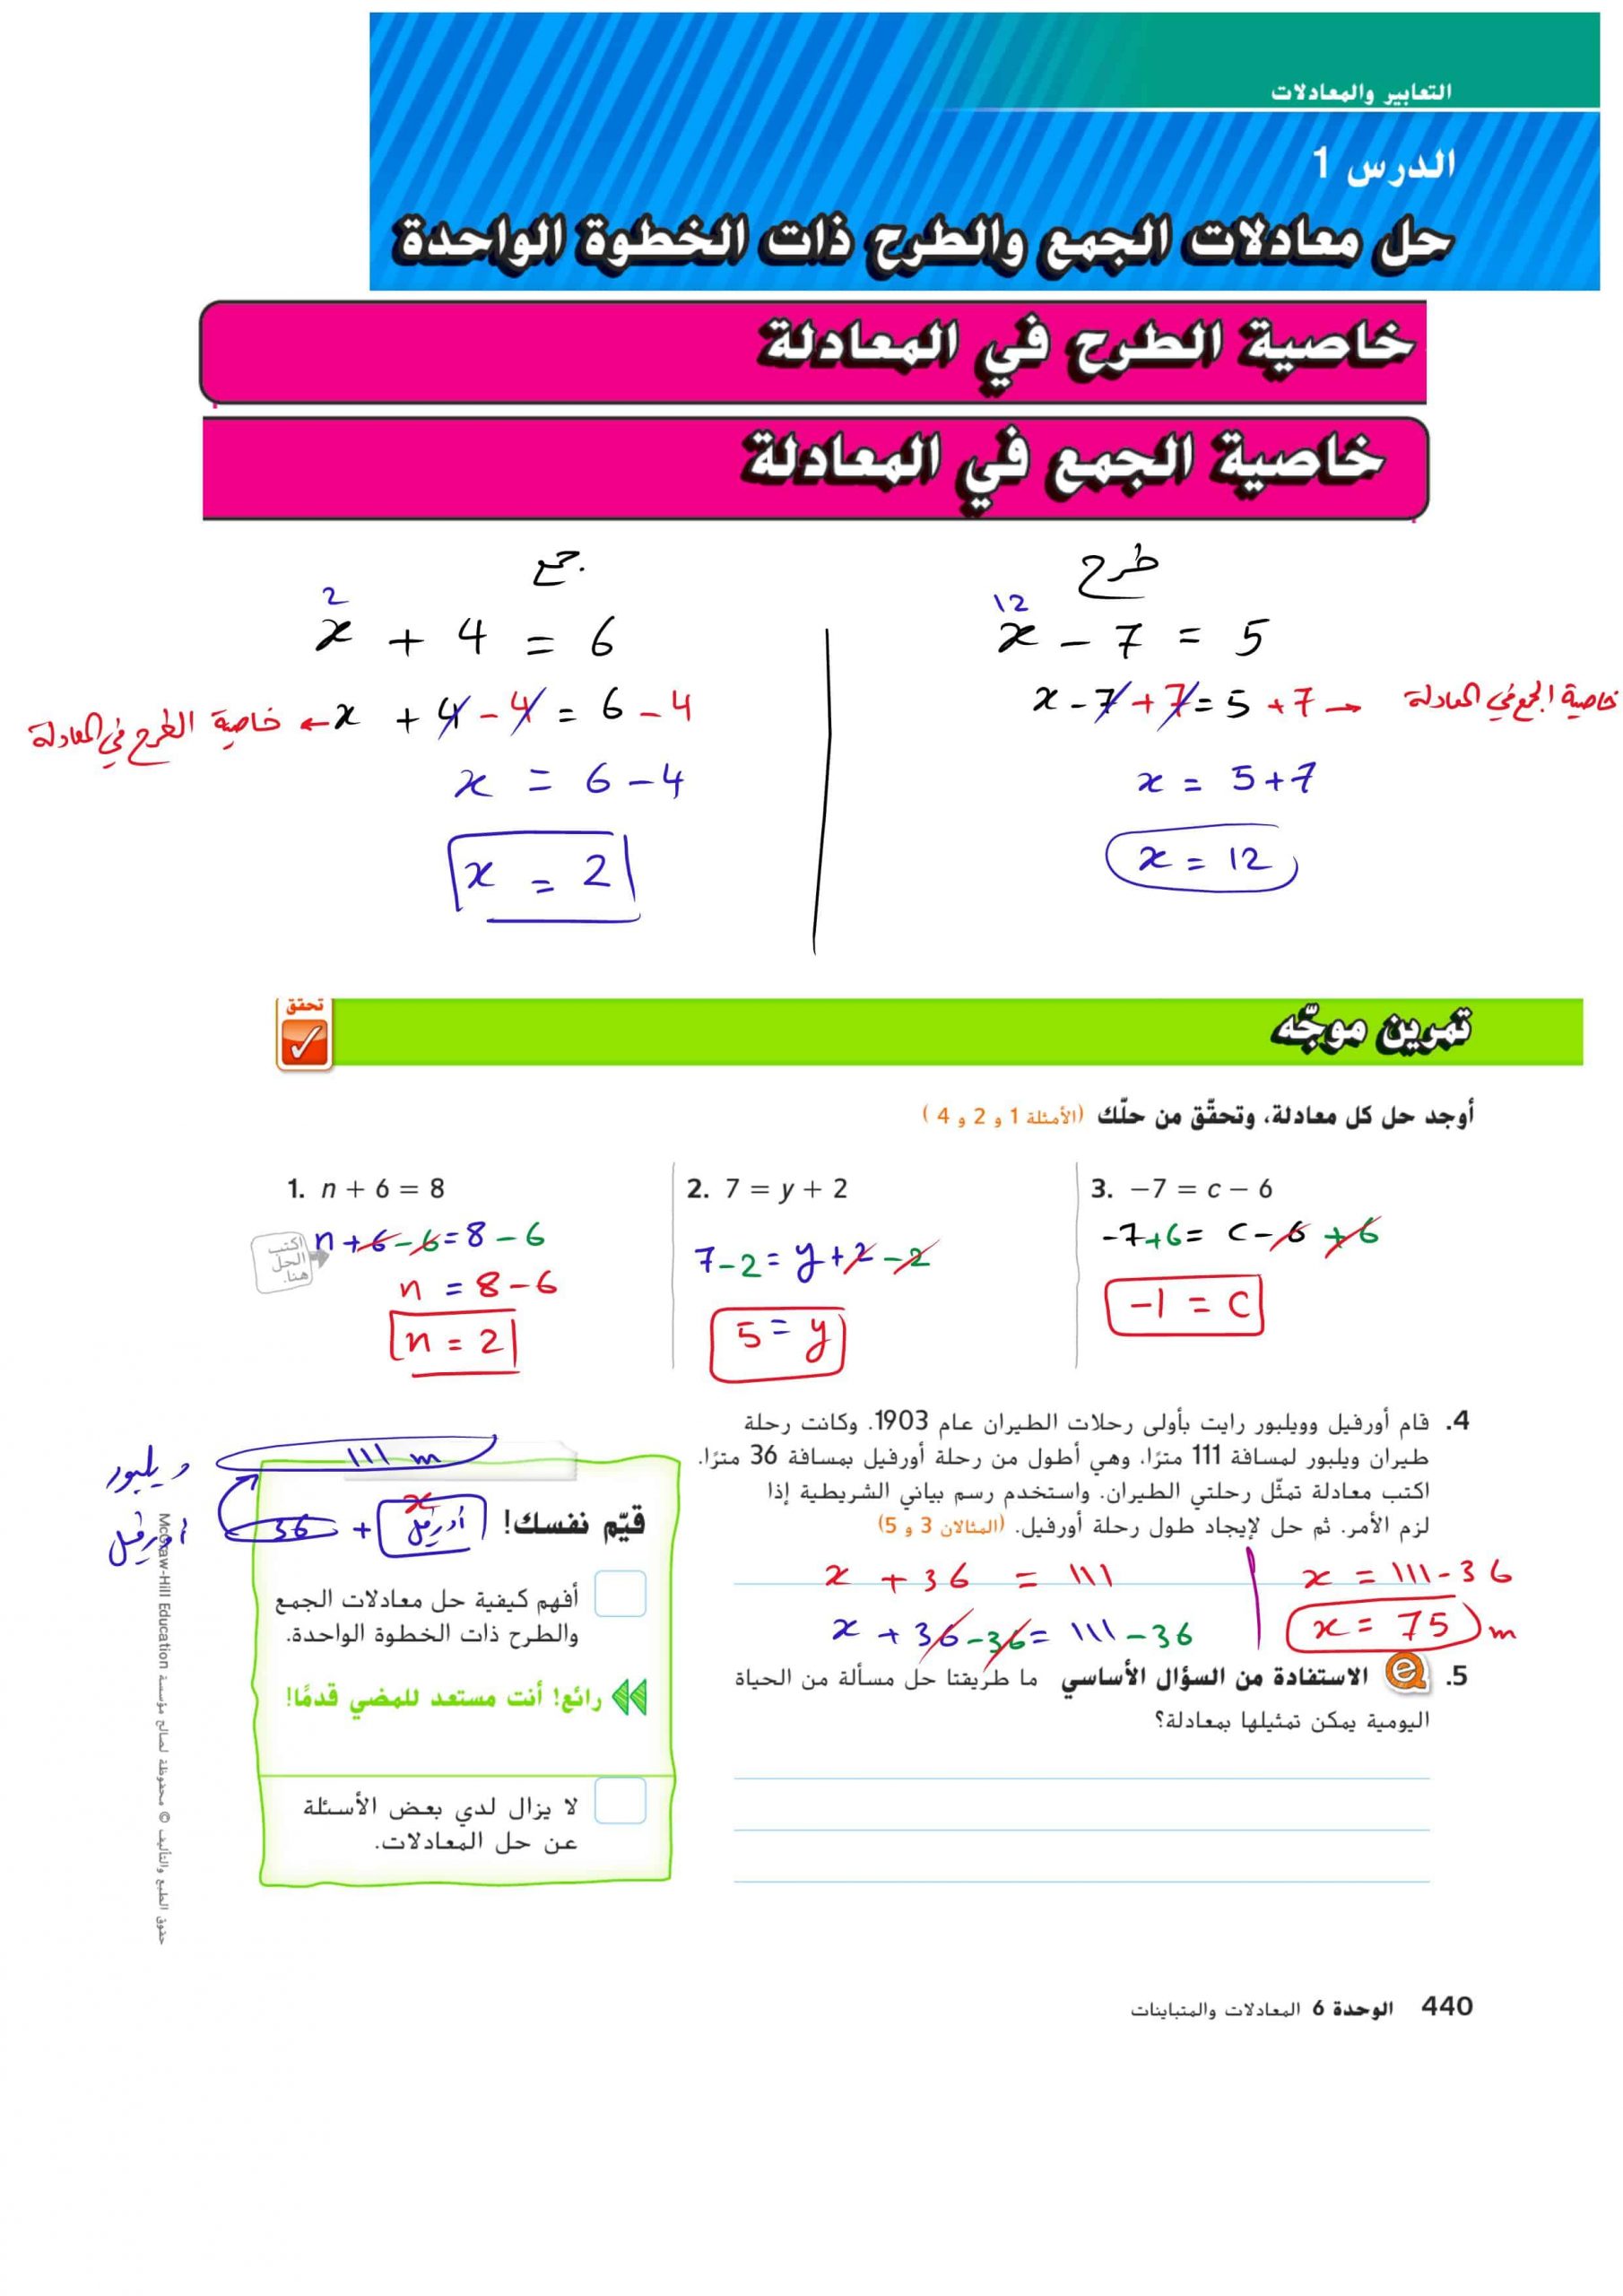 حل درس معادلات الجمع والطرح ذات الخطوة الواحدة الصف السابع مادة الرياضيات المتكاملة 